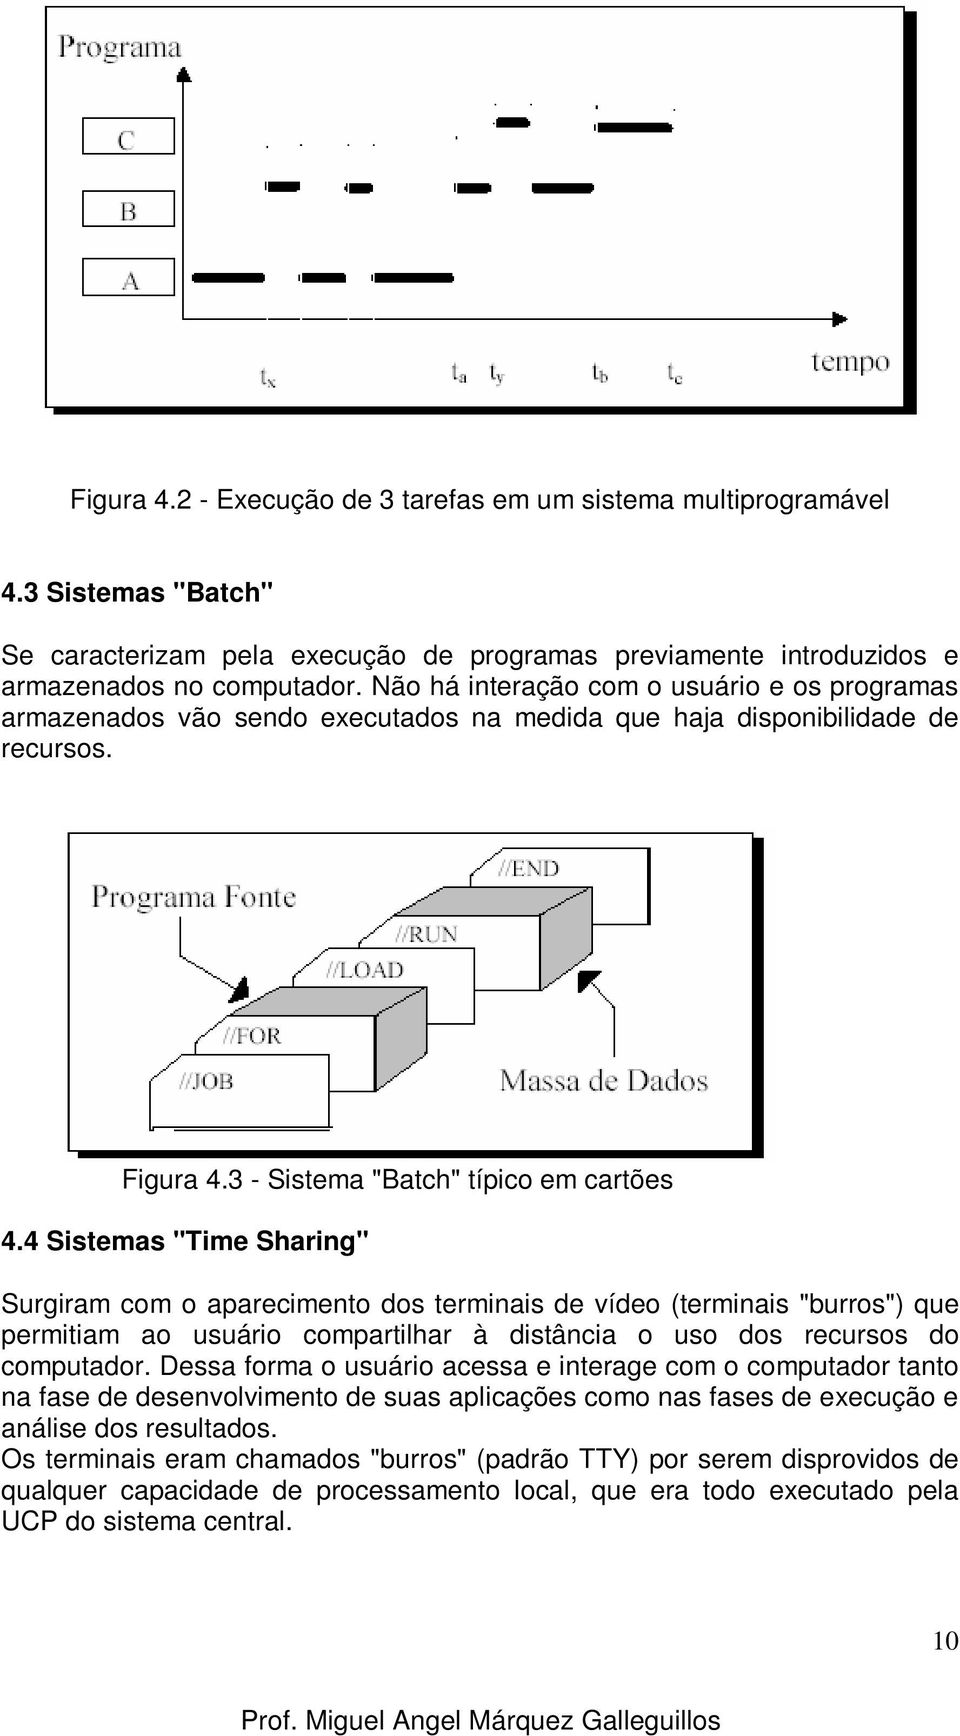 4 Sistemas "Time Sharing" Surgiram com o aparecimento dos terminais de vídeo (terminais "burros") que permitiam ao usuário compartilhar à distância o uso dos recursos do computador.